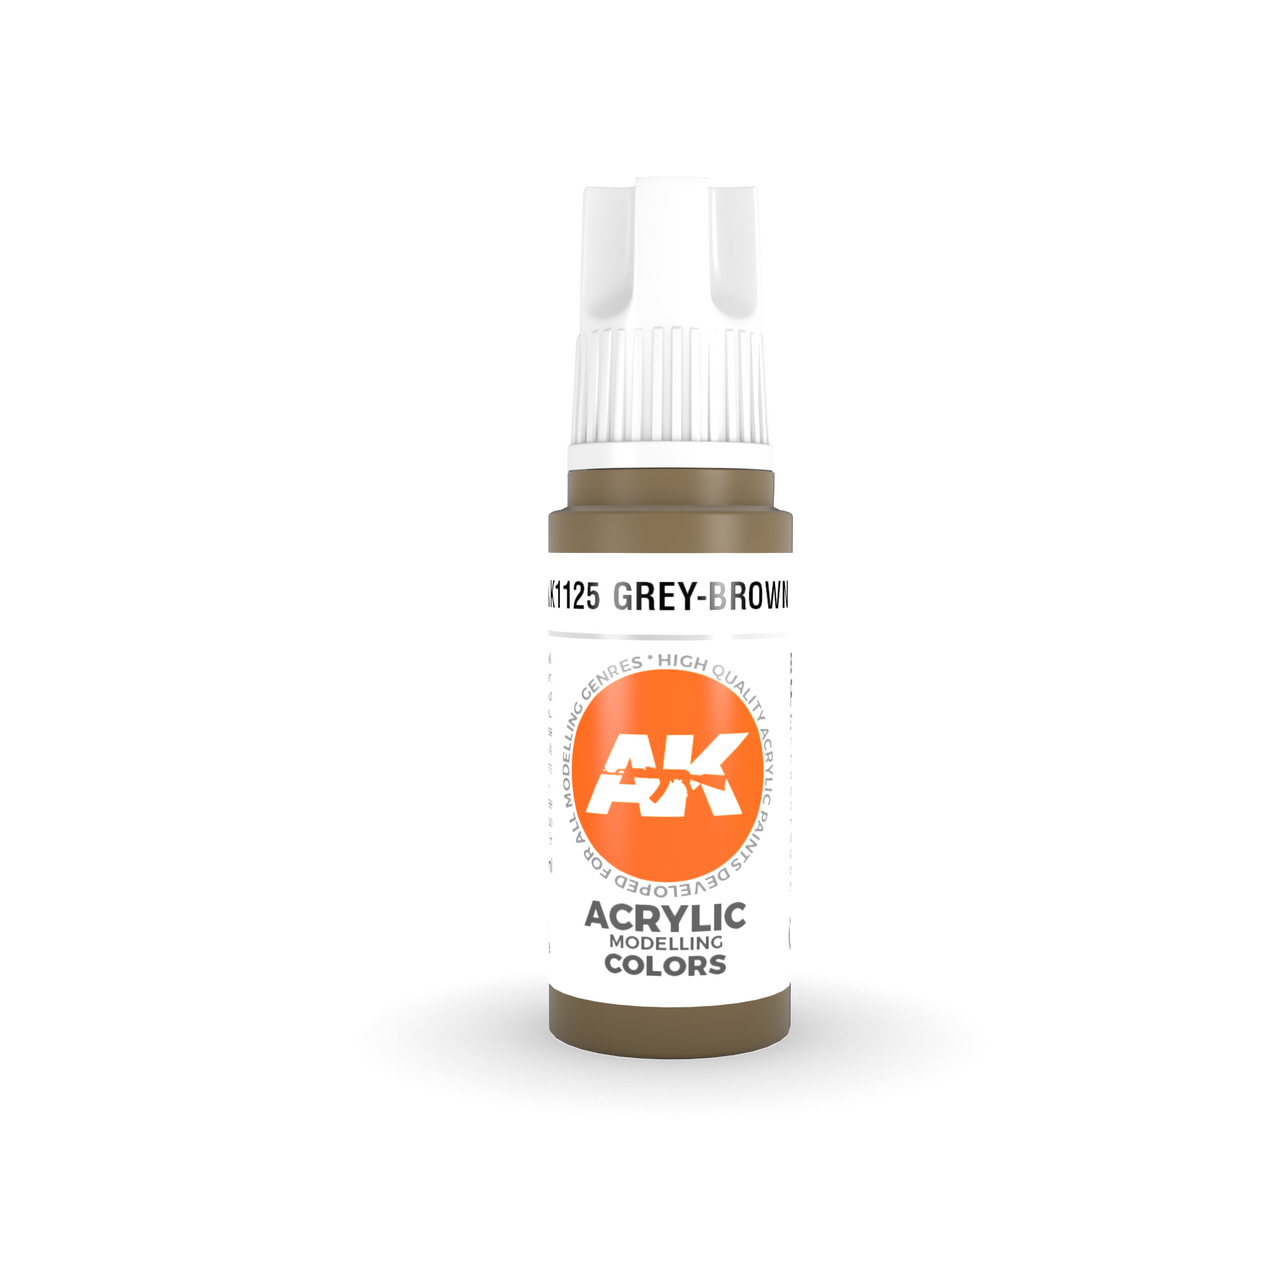 Grey-Brown - AK 3Gen Acrylic